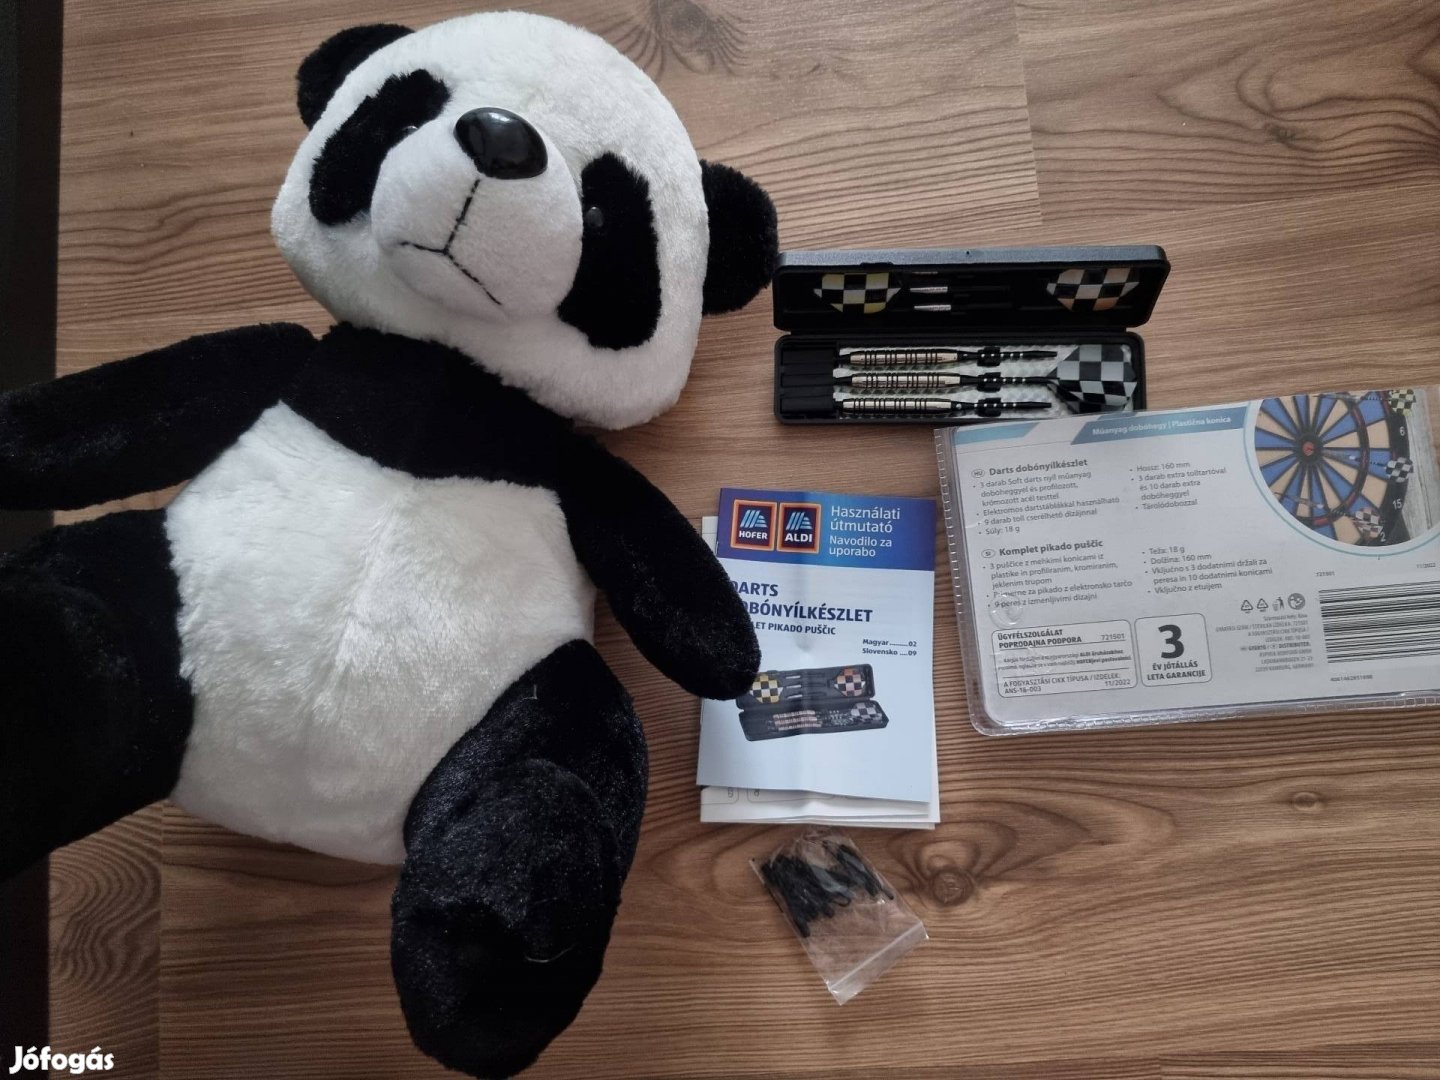 Új Panda maci 35cm és új darts dobónyílkészlet